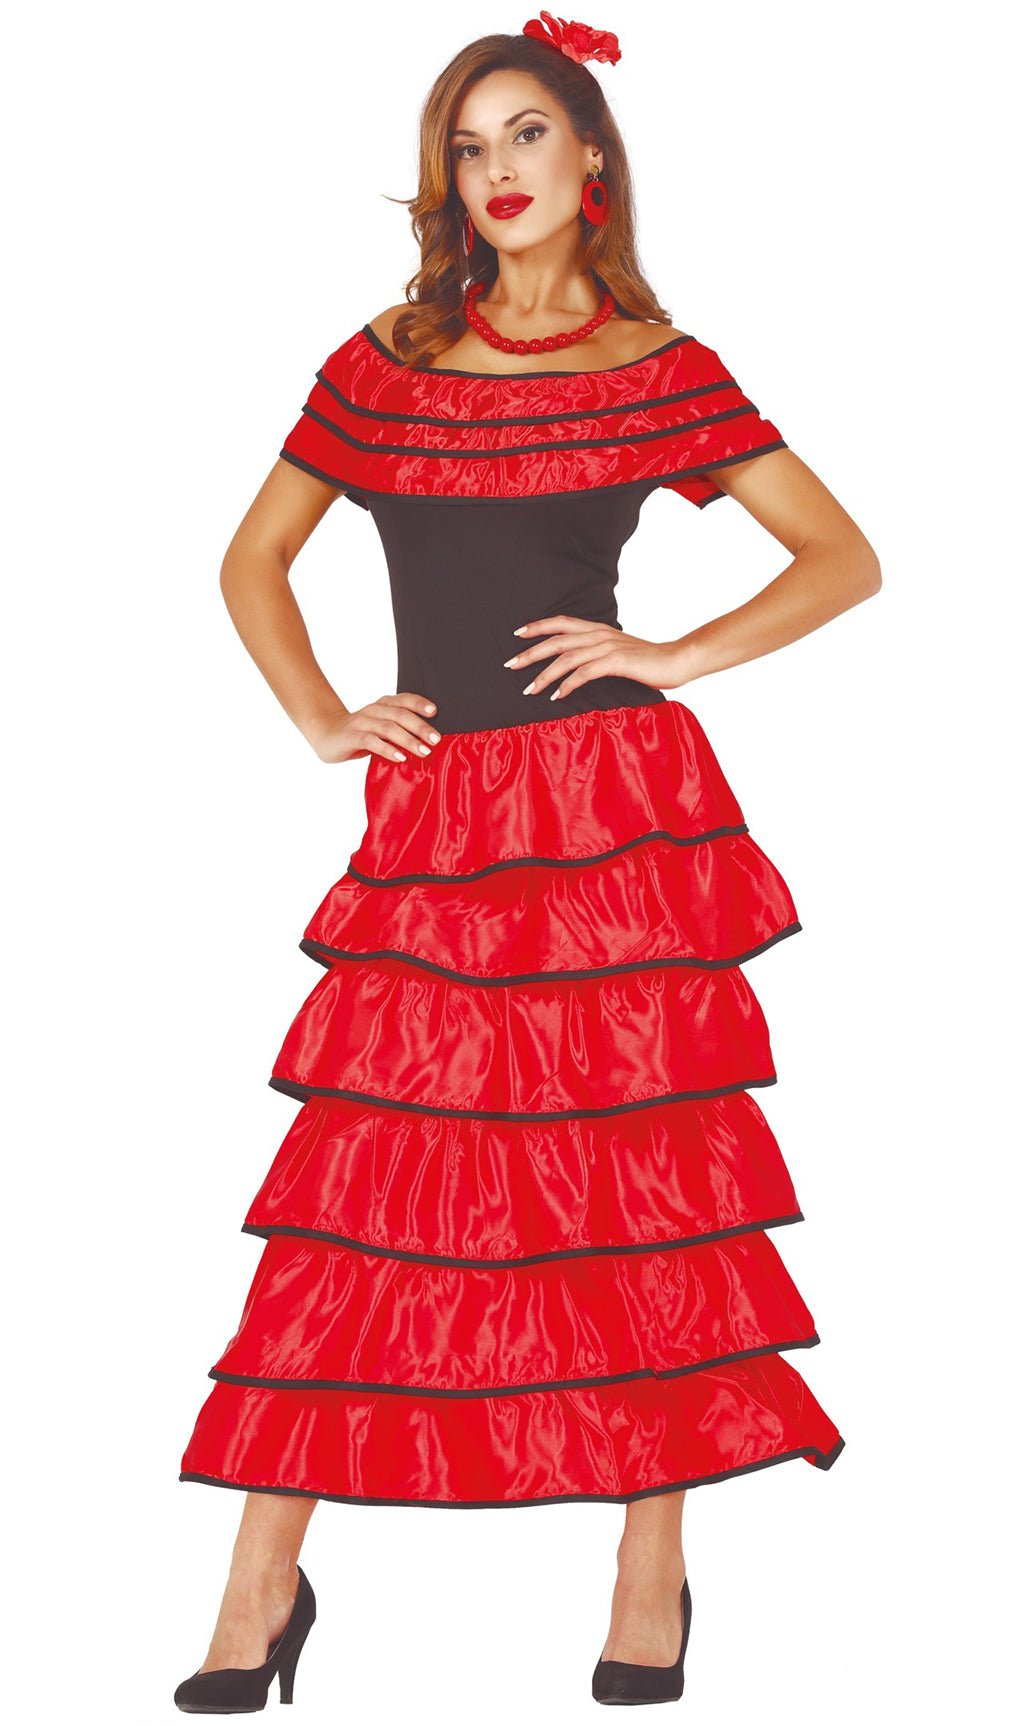 Disfraz de flamenca rojo y blanco para mujer por 27,00 €